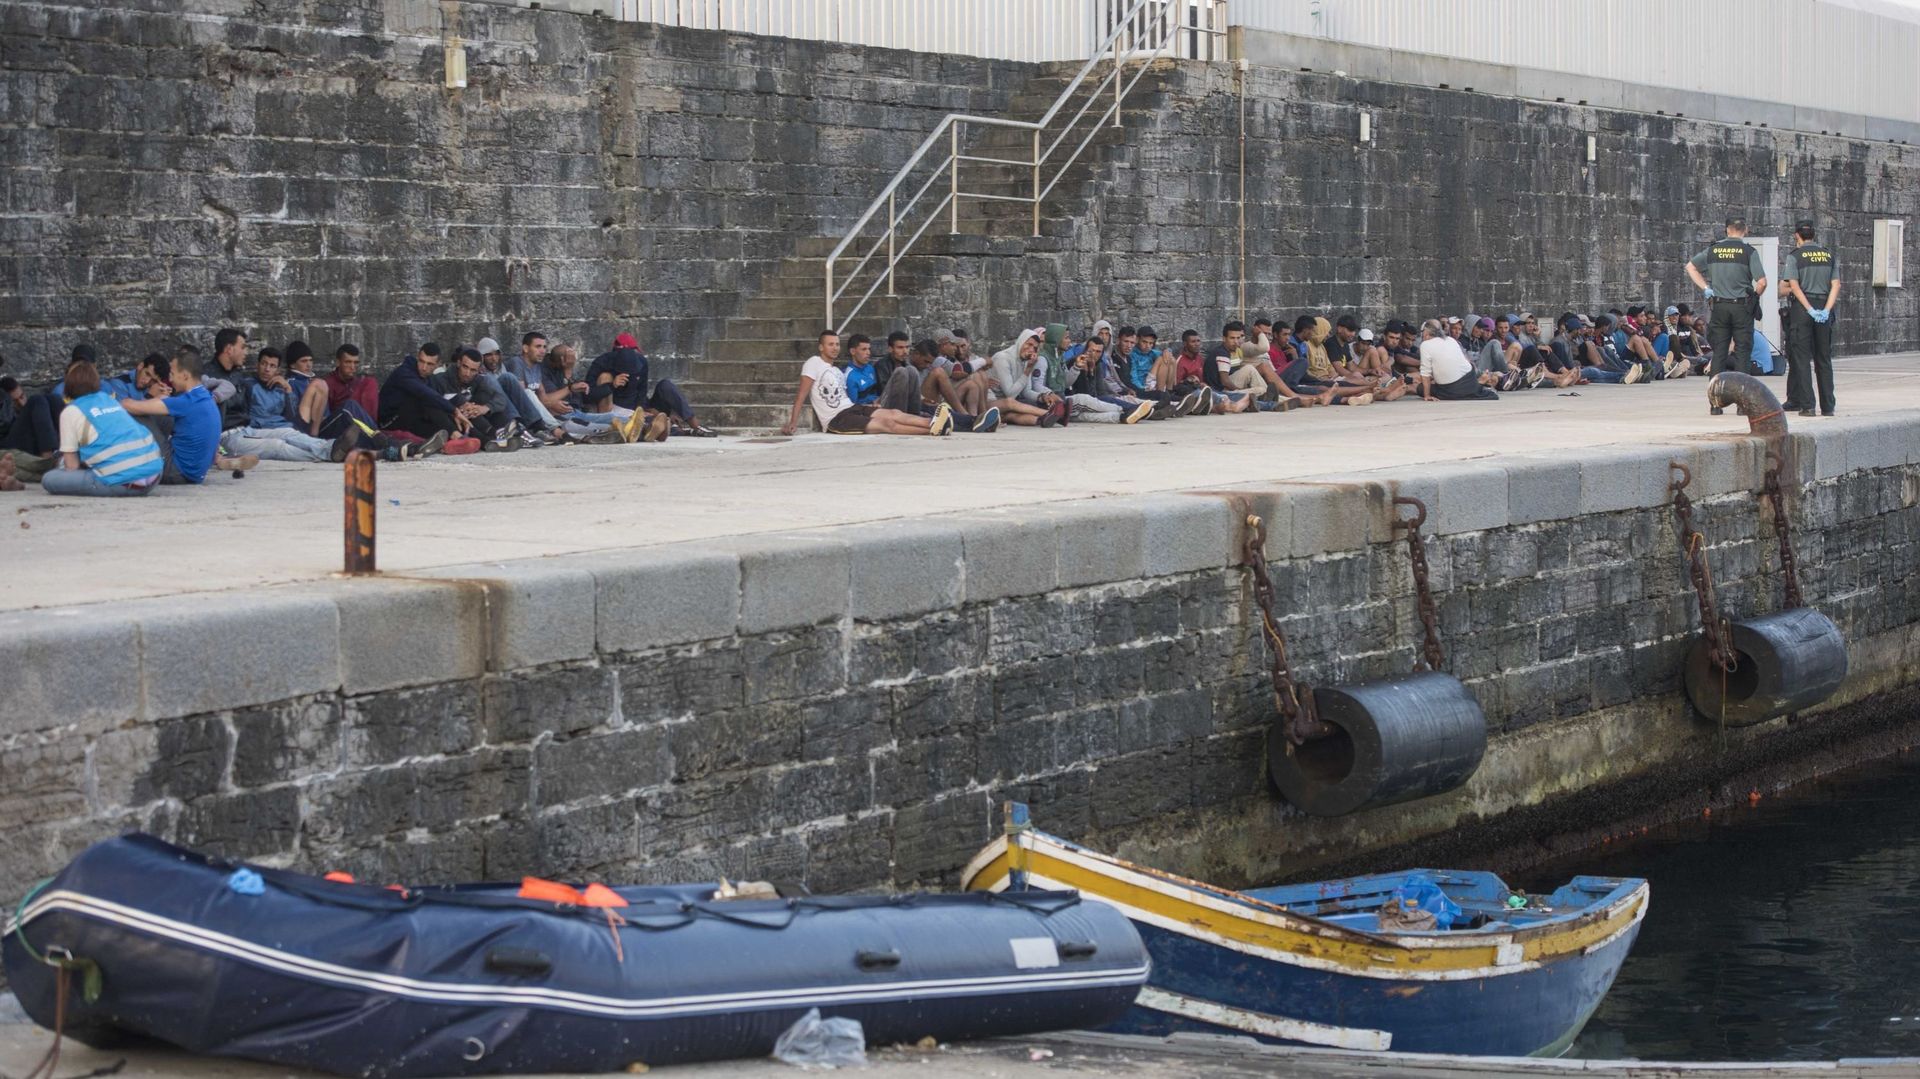 Plus de 1600 migrants sont arrivés sur les îles Canaries ce week-end